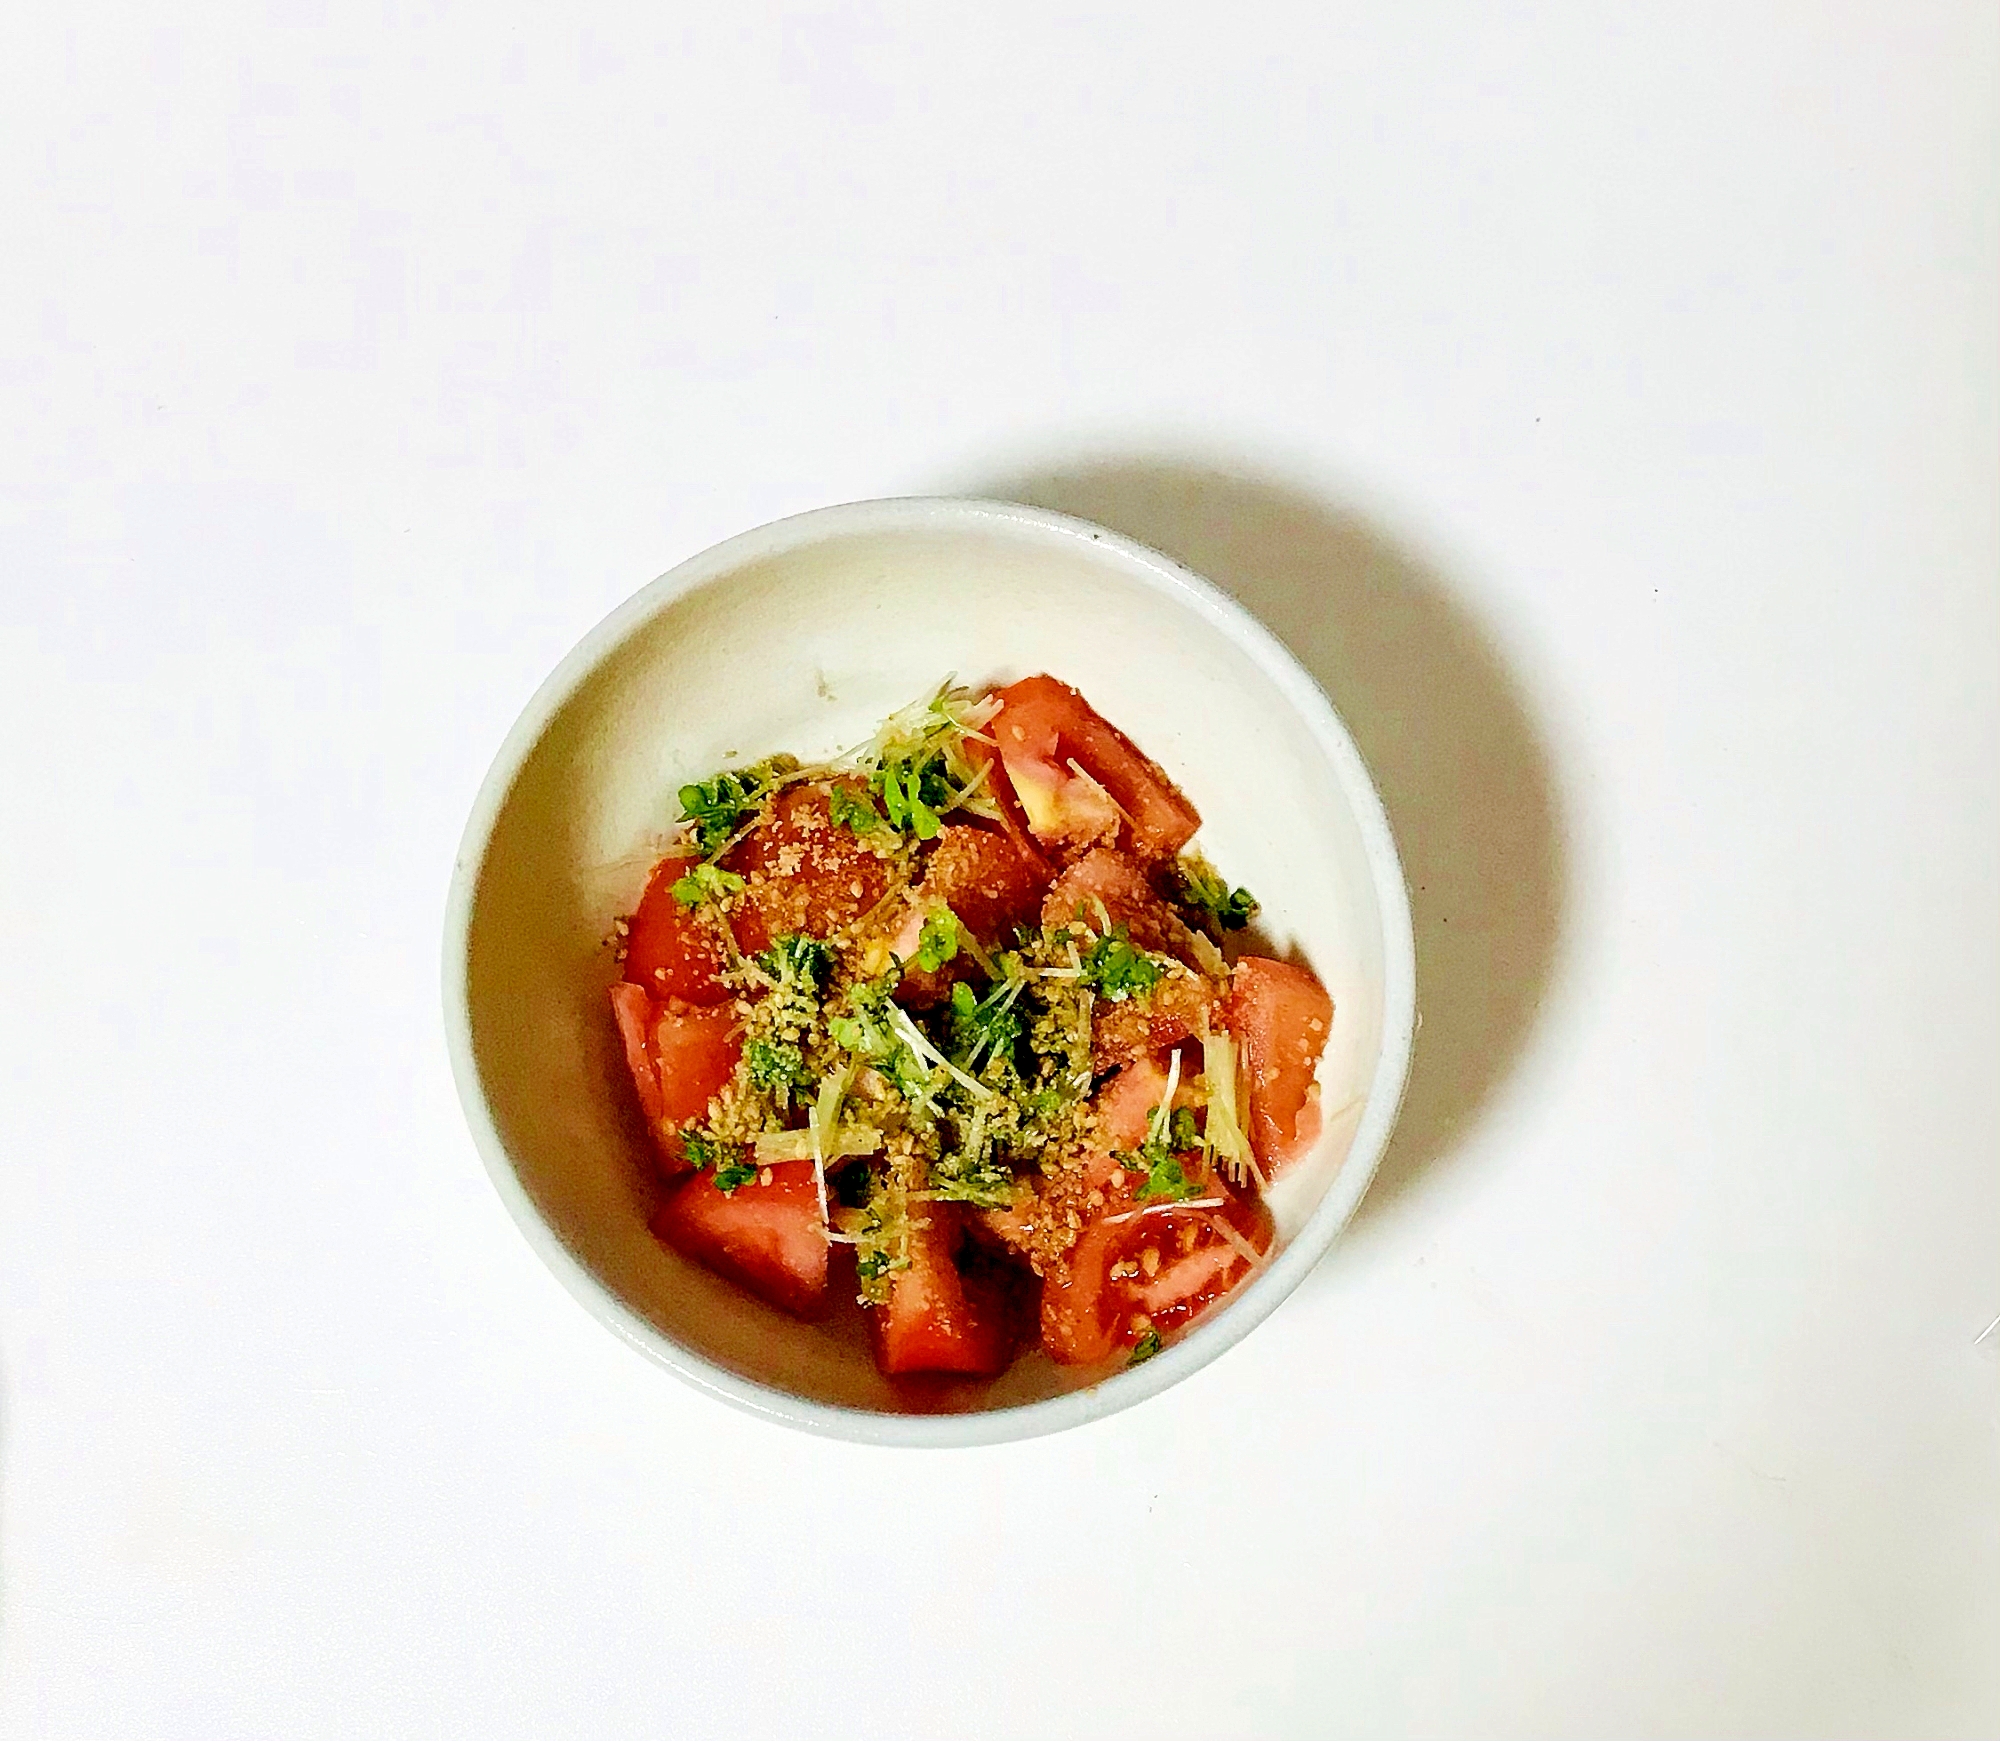 トマトとスプラウトの簡単和風サラダ